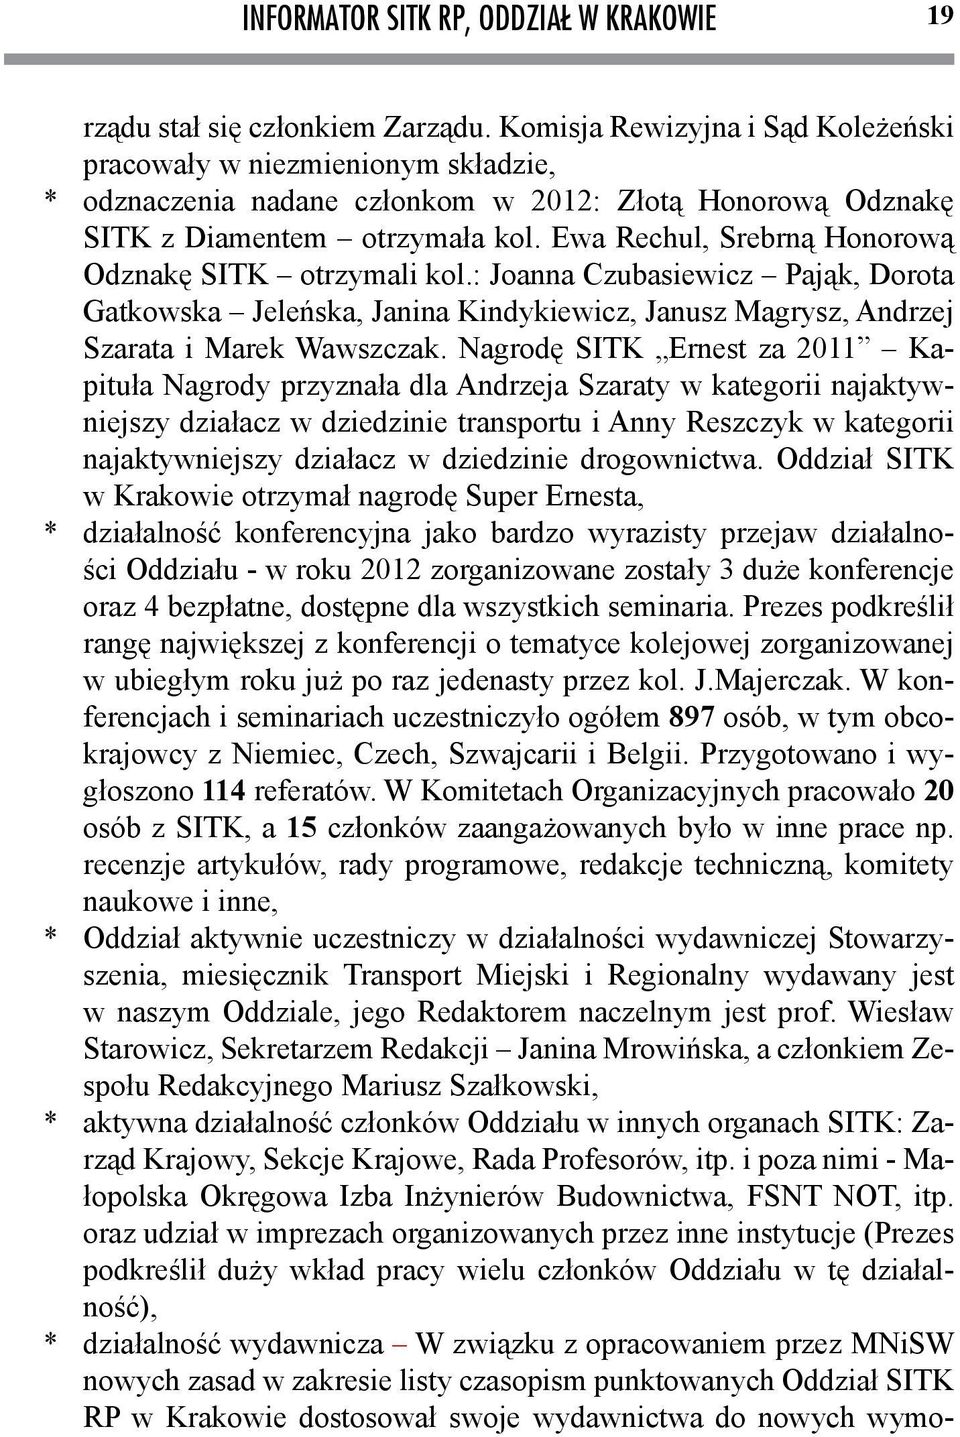 Nagrodę SITK Ernest za 2011 Kapituła Nagrody przyznała dla Andrzeja Szaraty w kategorii najaktywniejszy działacz w dziedzinie transportu i Anny Reszczyk w kategorii najaktywniejszy działacz w